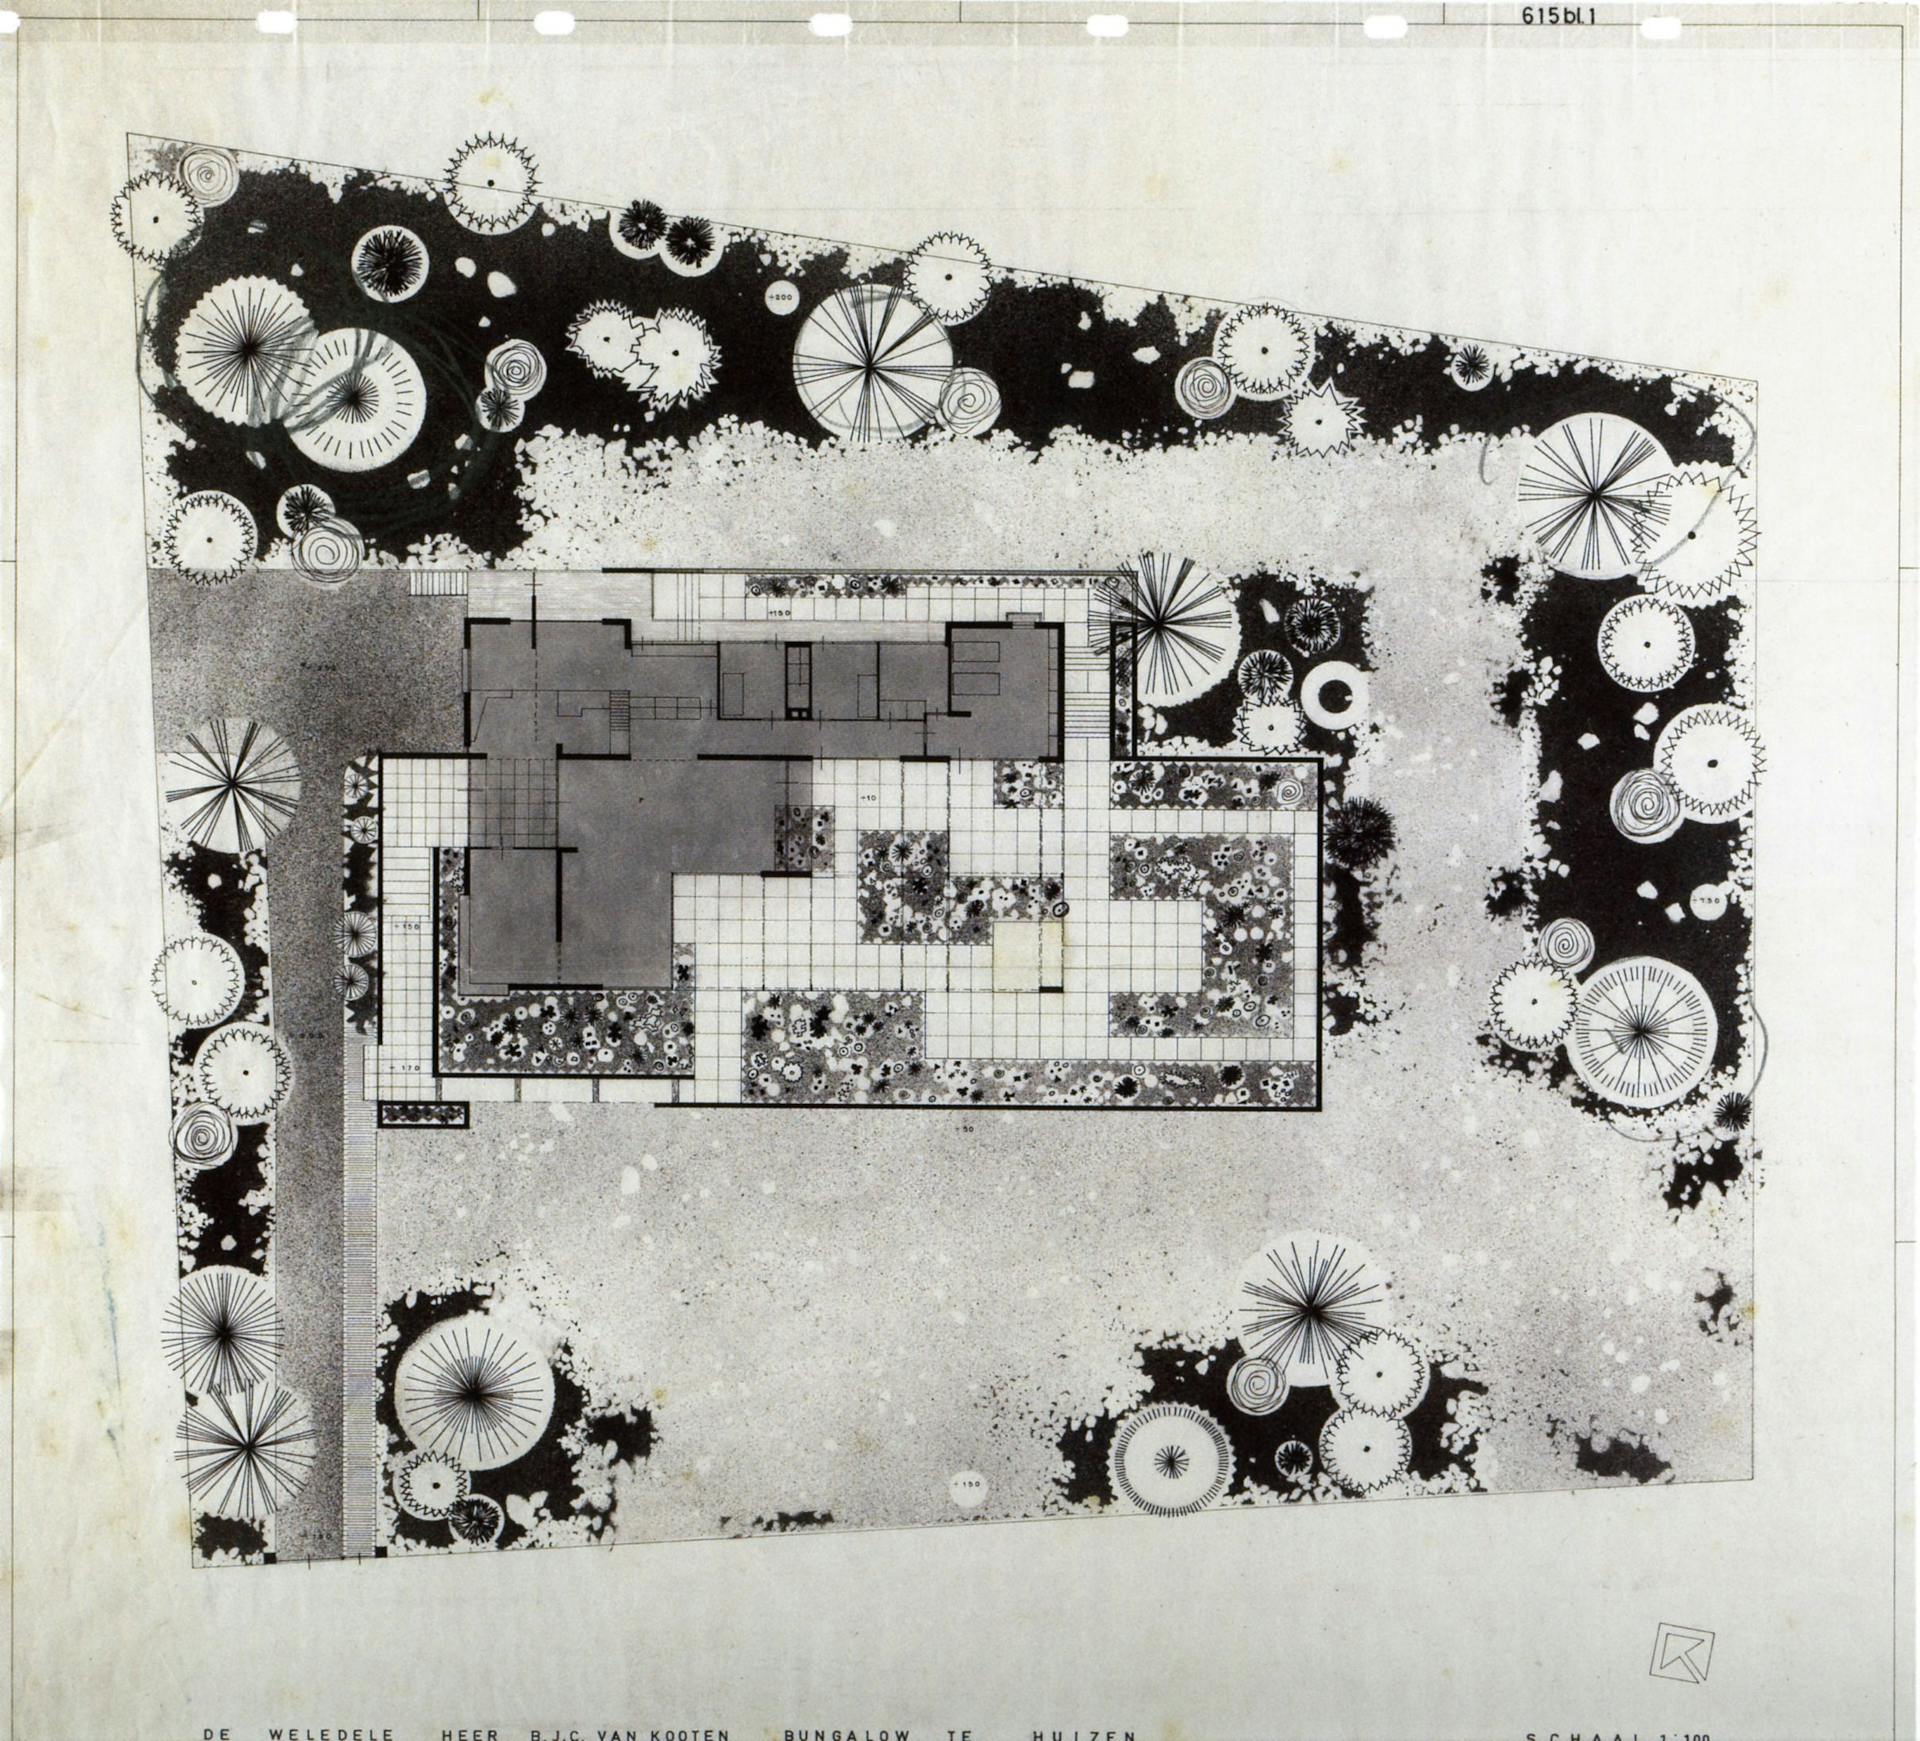 Pieter Buys. Plattegrond tuin Van Kooten, Huizen, 1962. Bureau-archief MTD Landschapsarchitecten, Den Bosch. 